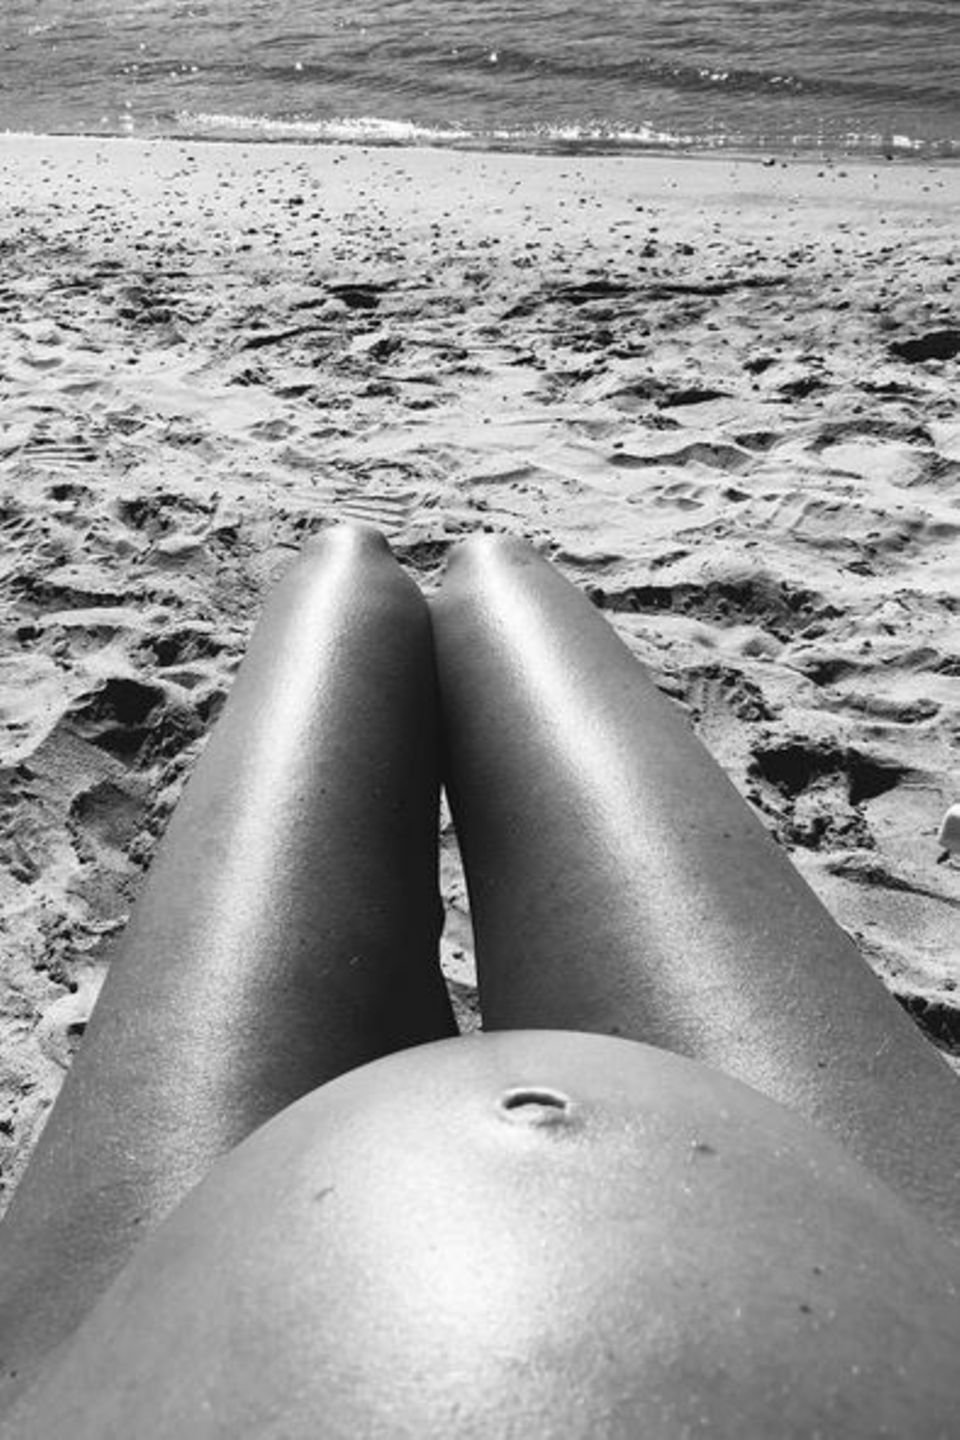 Juni 2016  "Hot Dog Legs" plus Babykugel: Diesen Schnappschuss teitl Model Candice Swanepoel auf ihrem Instagram-Profil.